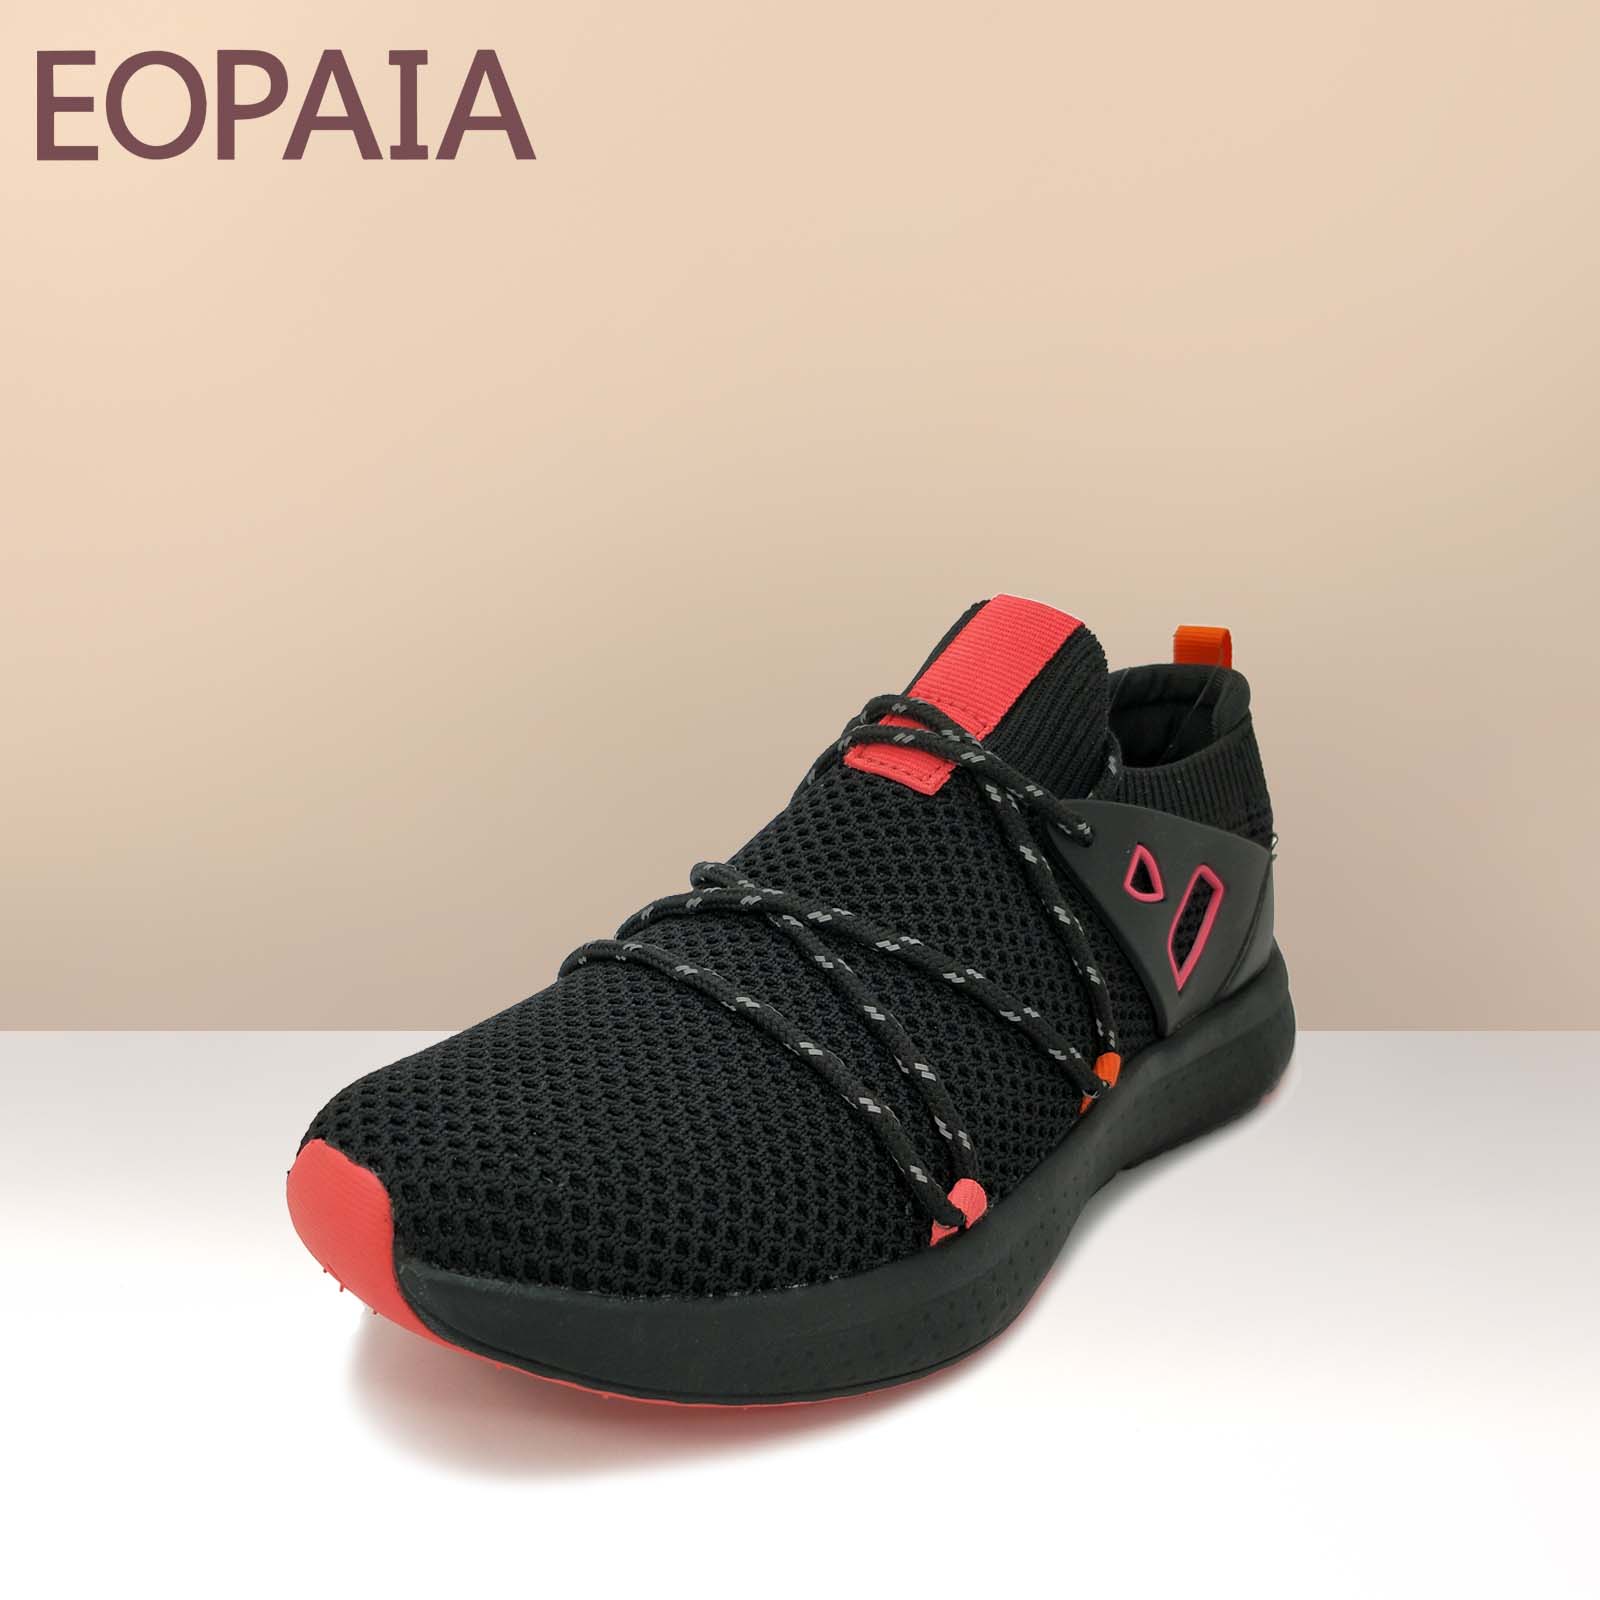 Fly-Strick-Schuhe Strickschuh für Frauen Sportschuhe Lässige Mode Schuhe Lace-Up Slip auf leichten Schuh